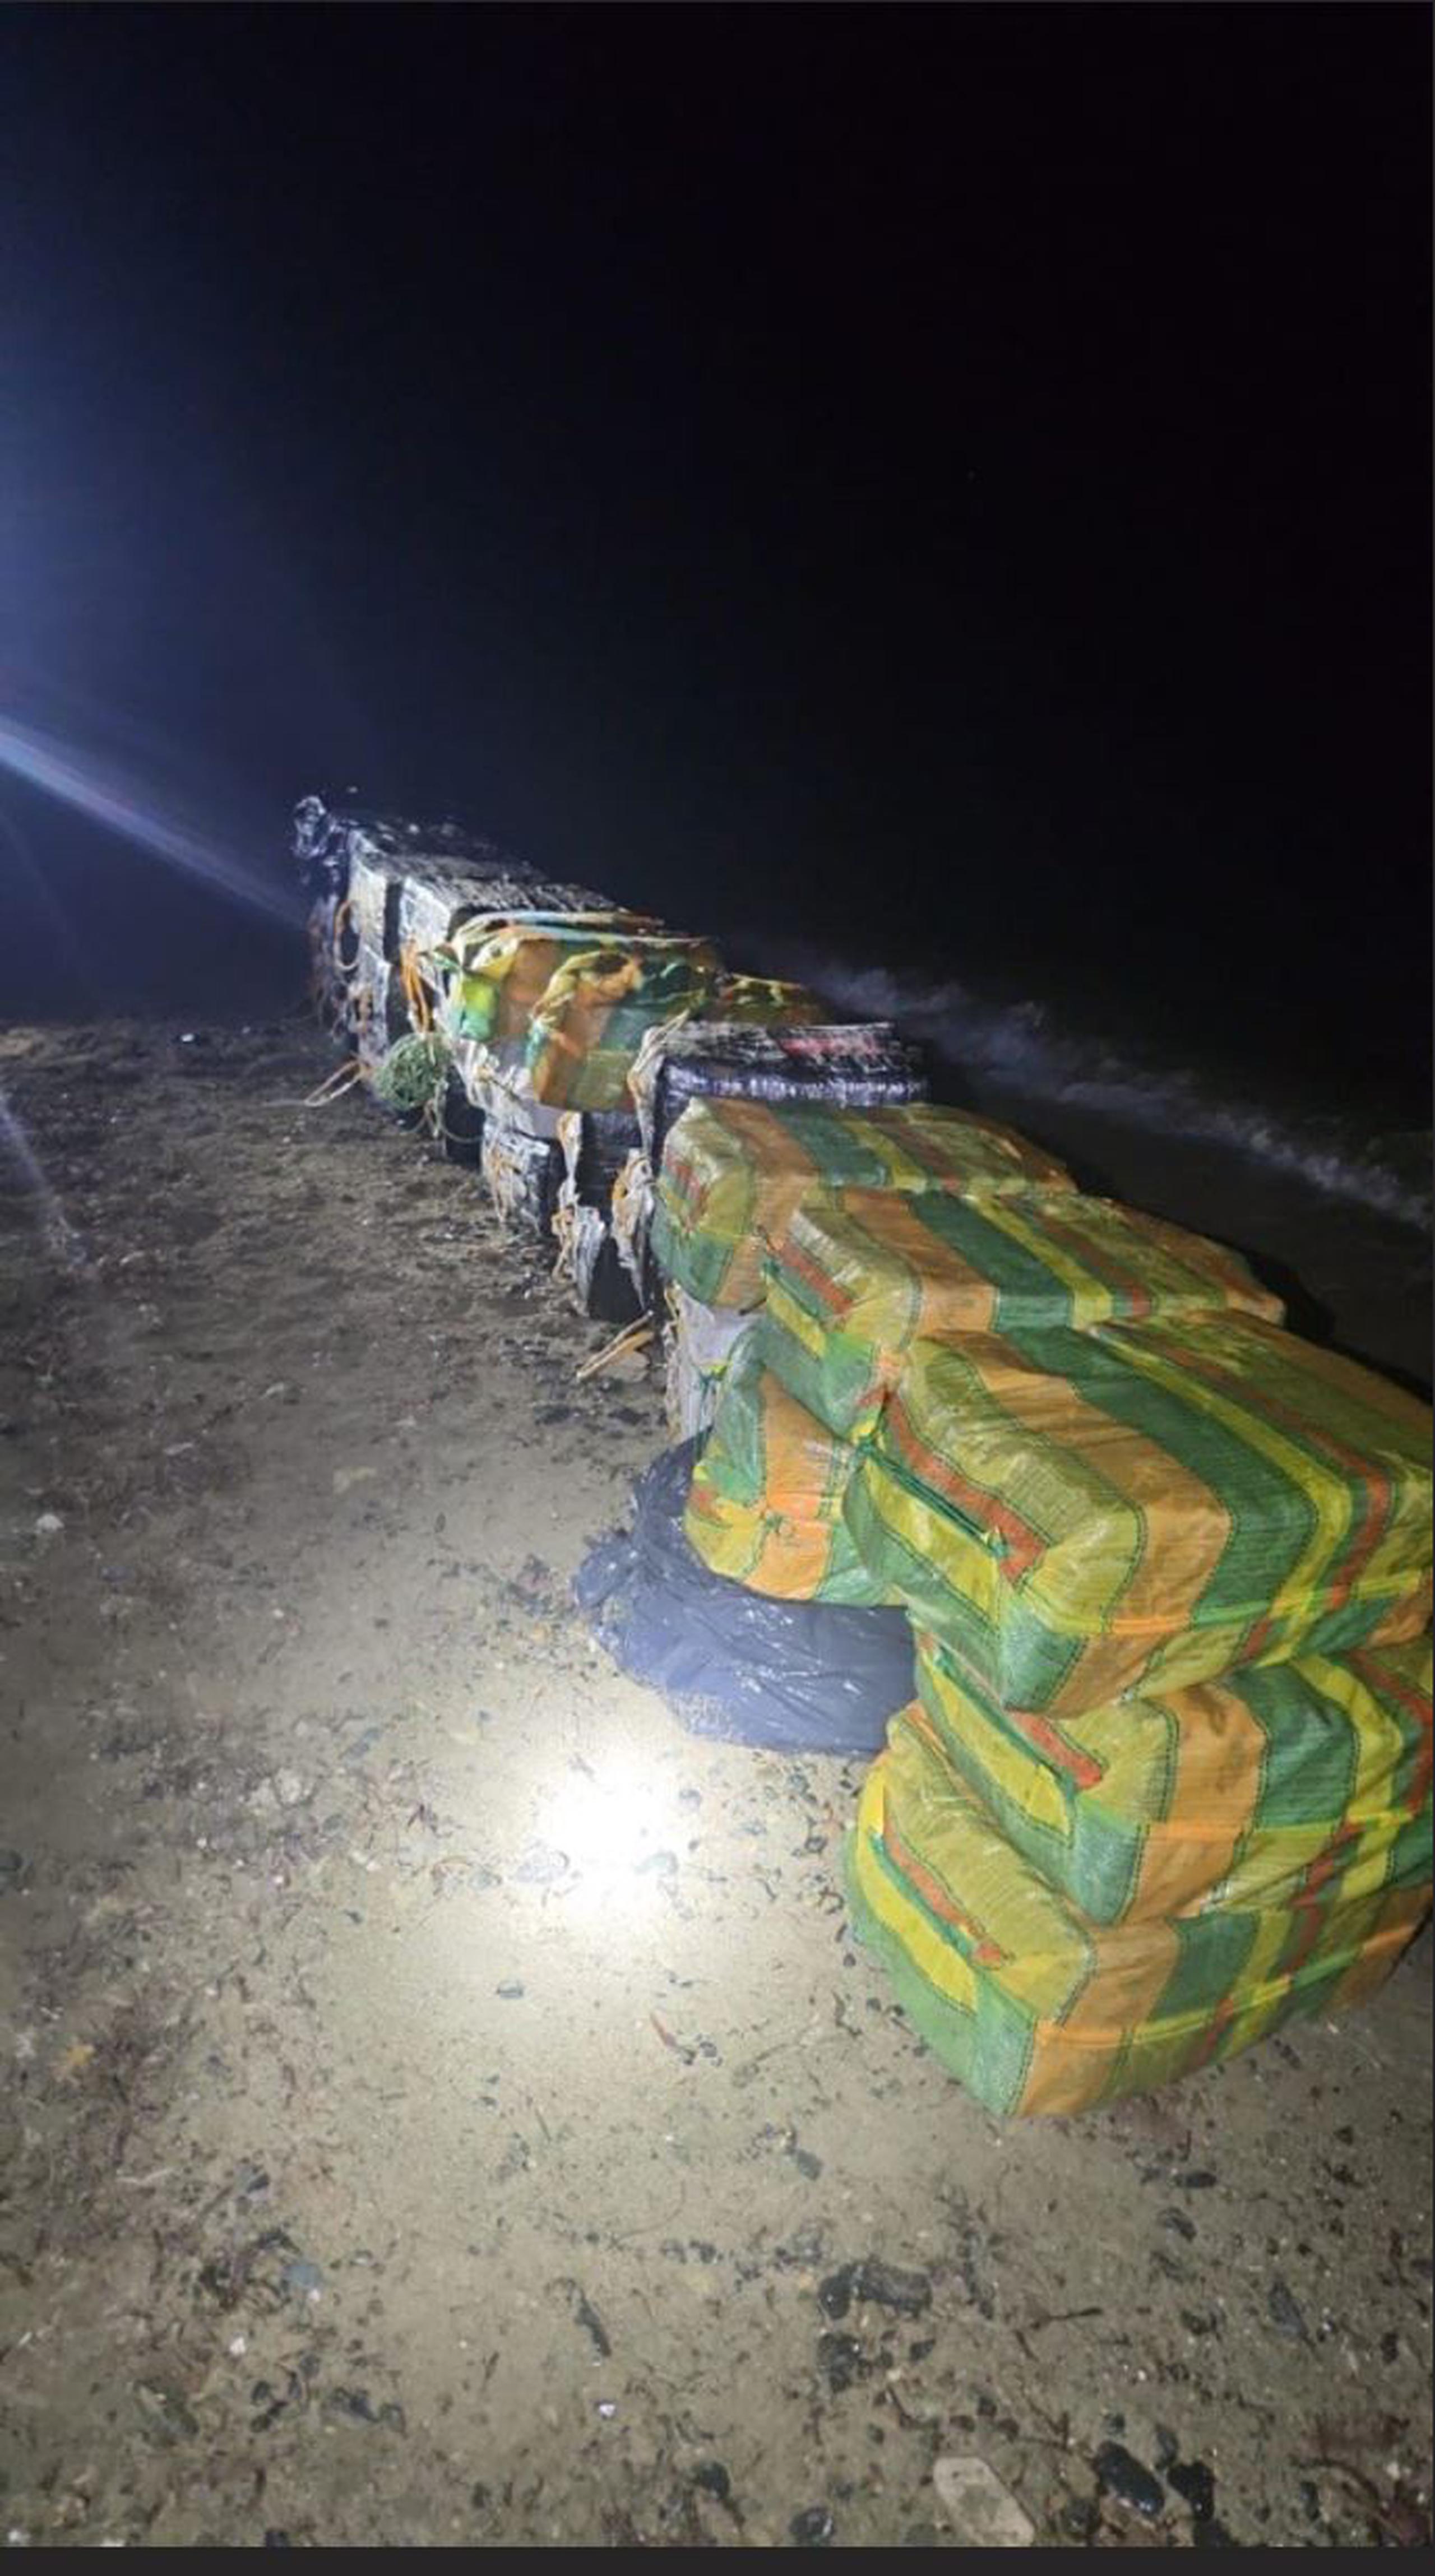 Cargamento de cocaína valorado en unos $35 millones fue ocupado en una yola con tres tripulante tras encallar en la costa de Patillas.